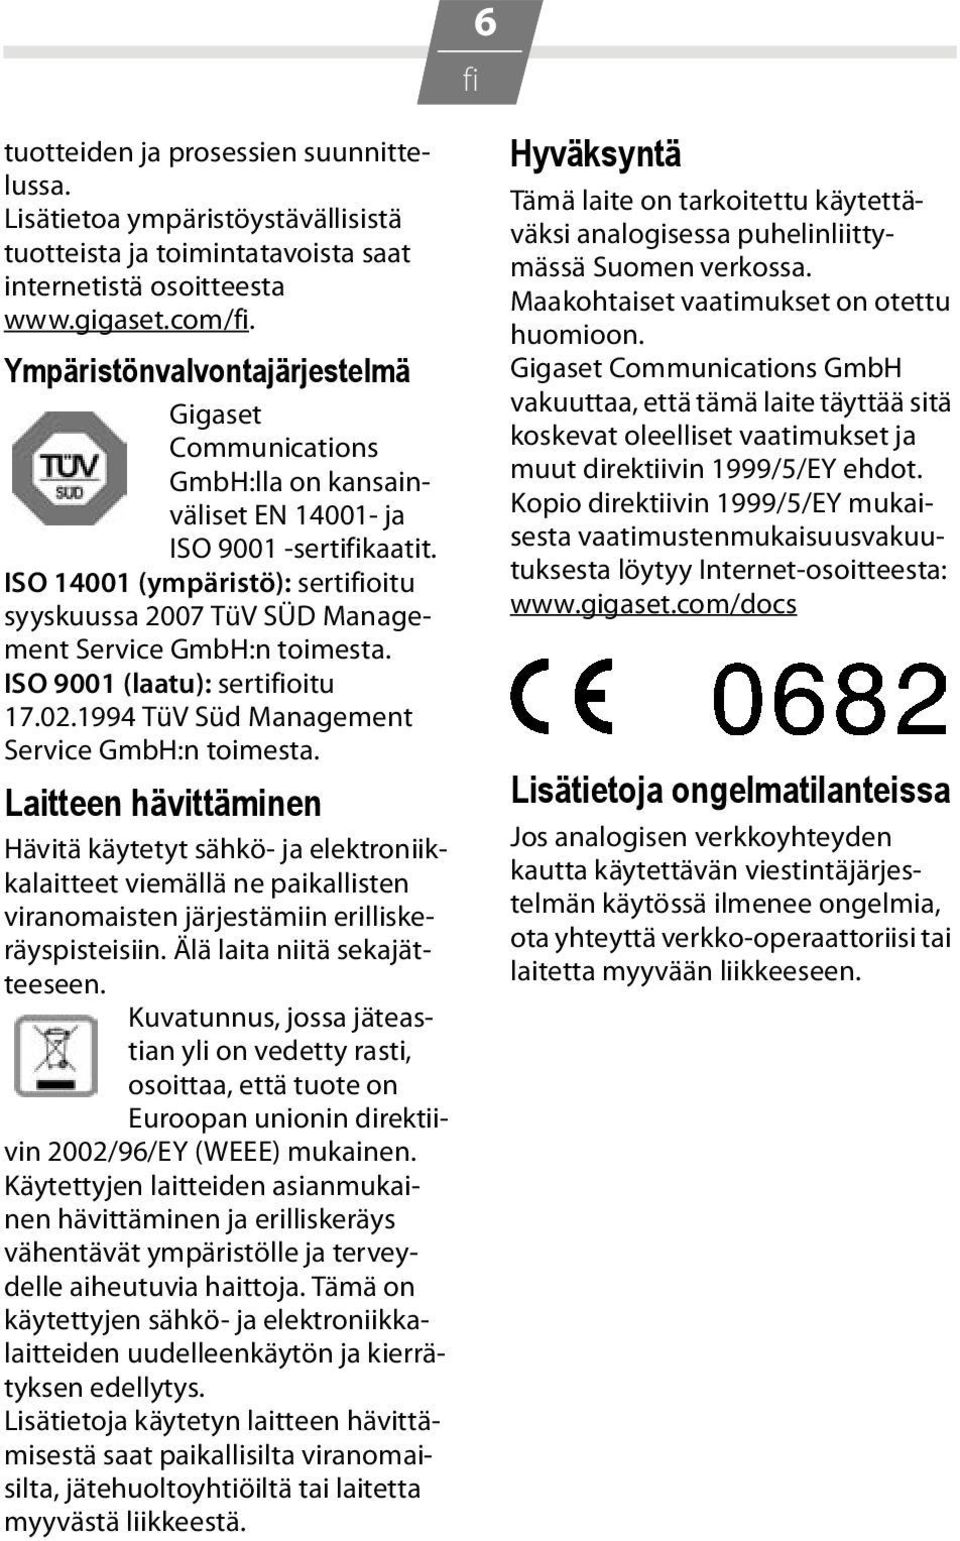 ISO 14001 (ympäristö): sertioitu syyskuussa 2007 TüV SÜD Management Service GmbH:n toimesta. ISO 9001 (laatu): sertioitu 17.02.1994 TüV Süd Management Service GmbH:n toimesta.